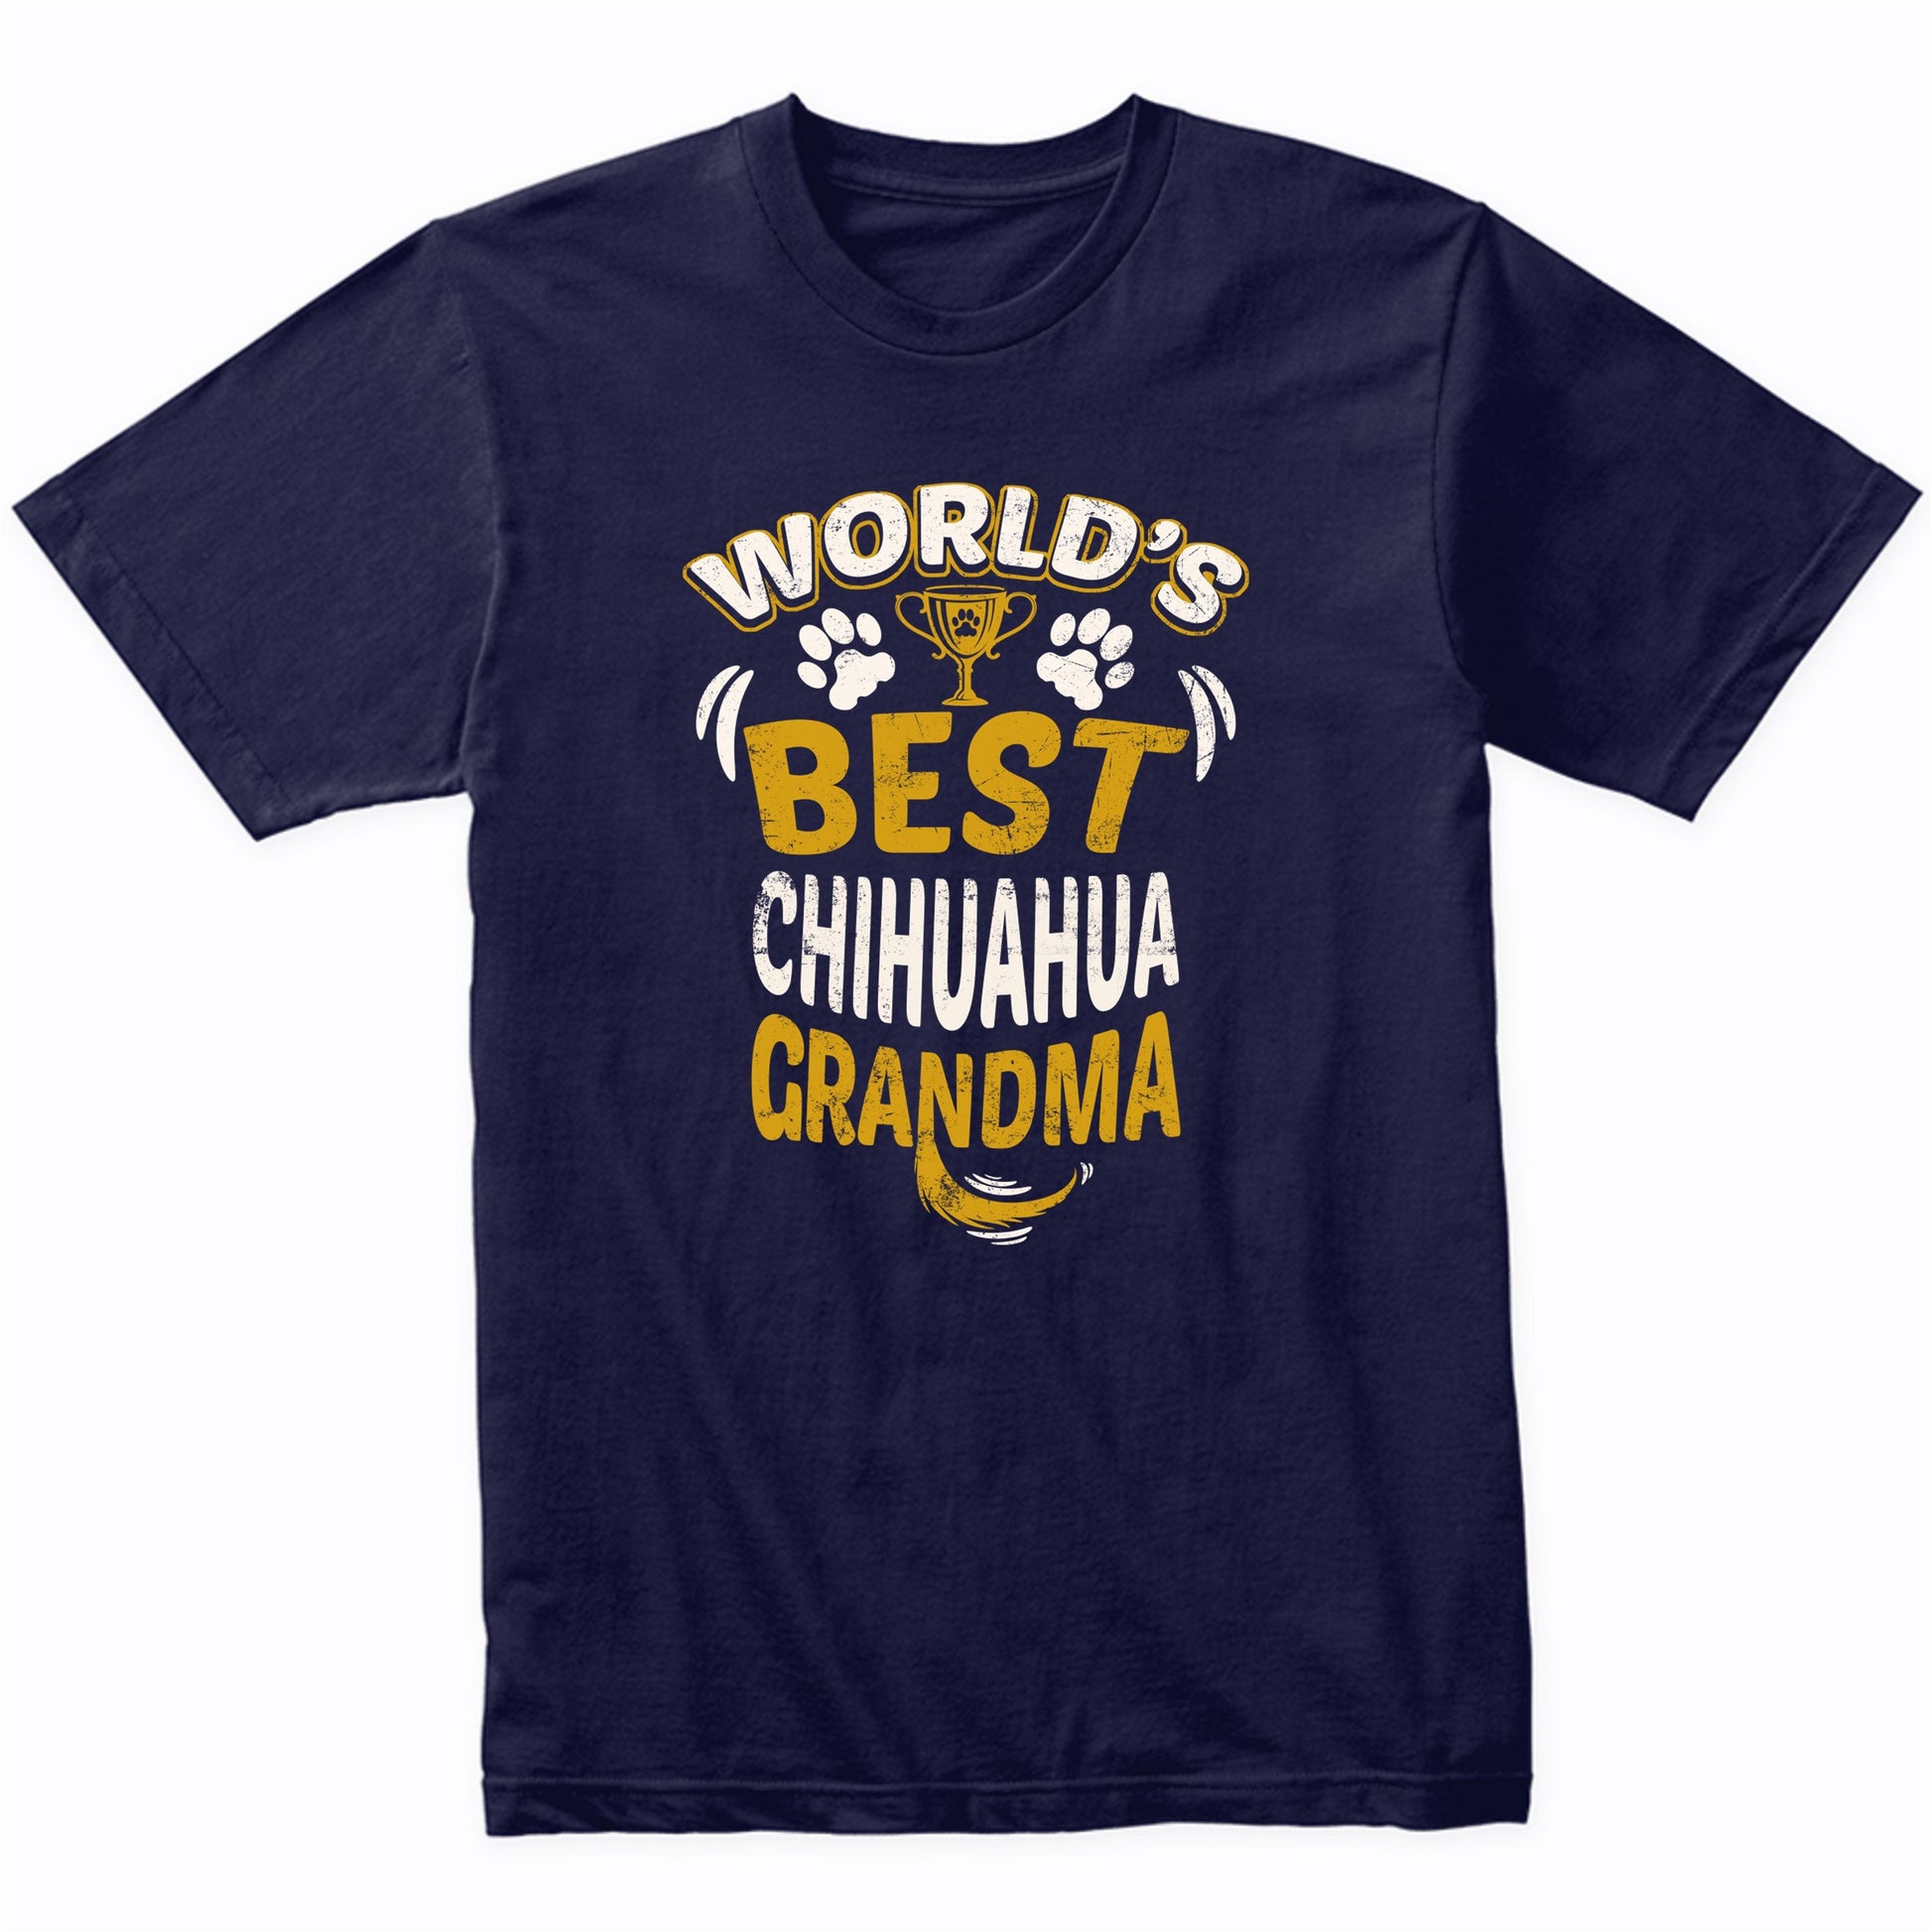 World's Best Chihuahua Grandma Graphic T-Shirt